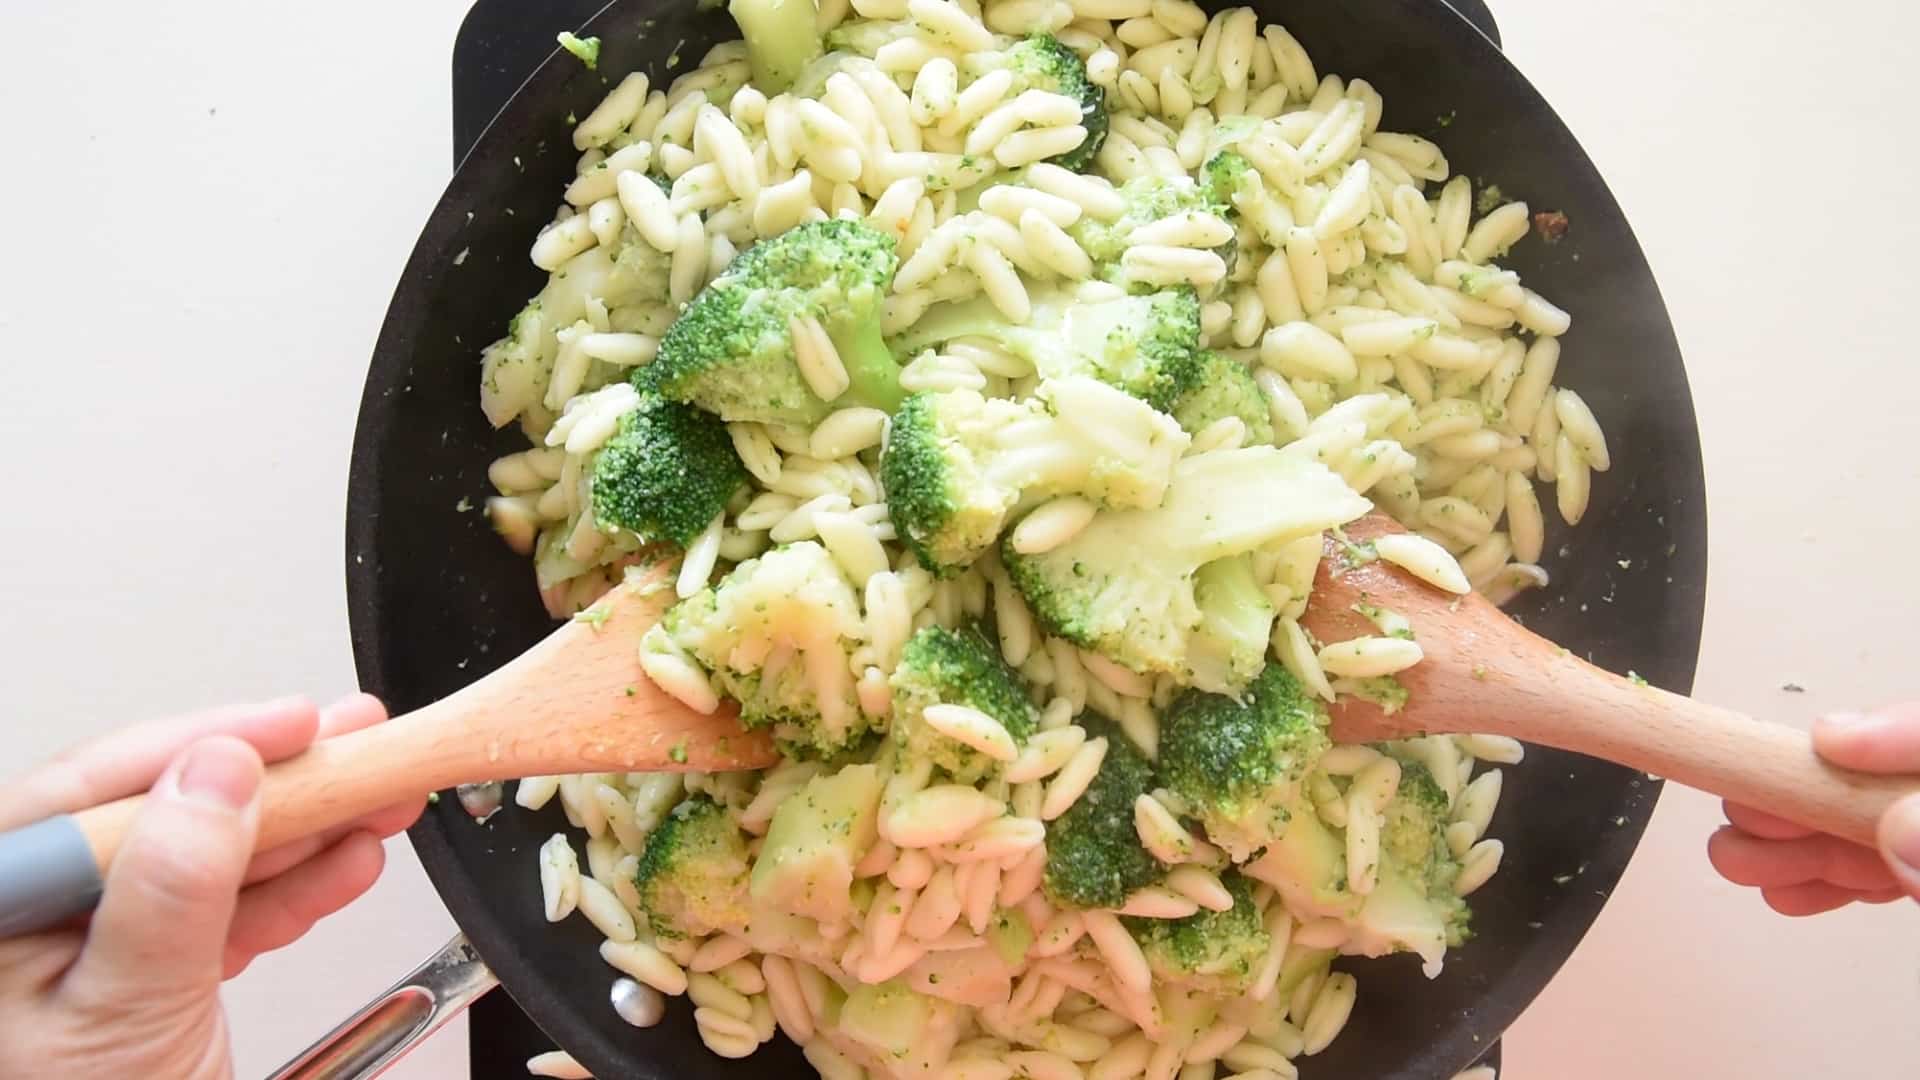 Add the cavatelli to the broccoli